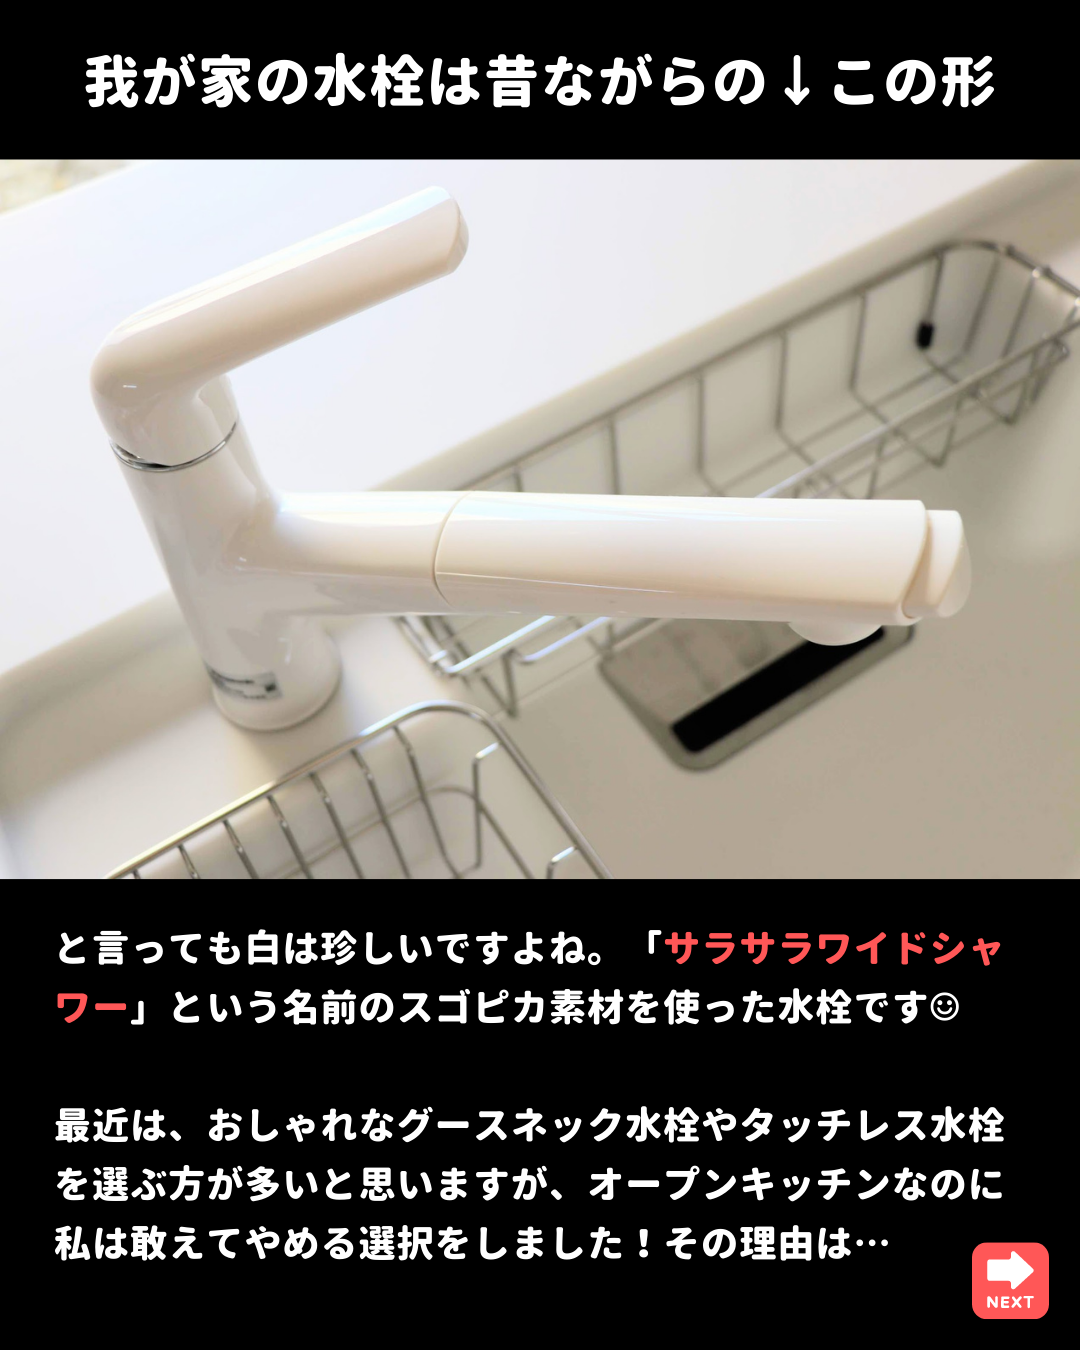 全日本送料無料 パナソニック混合水栓サラサラワイドシャワー浄水器 ...